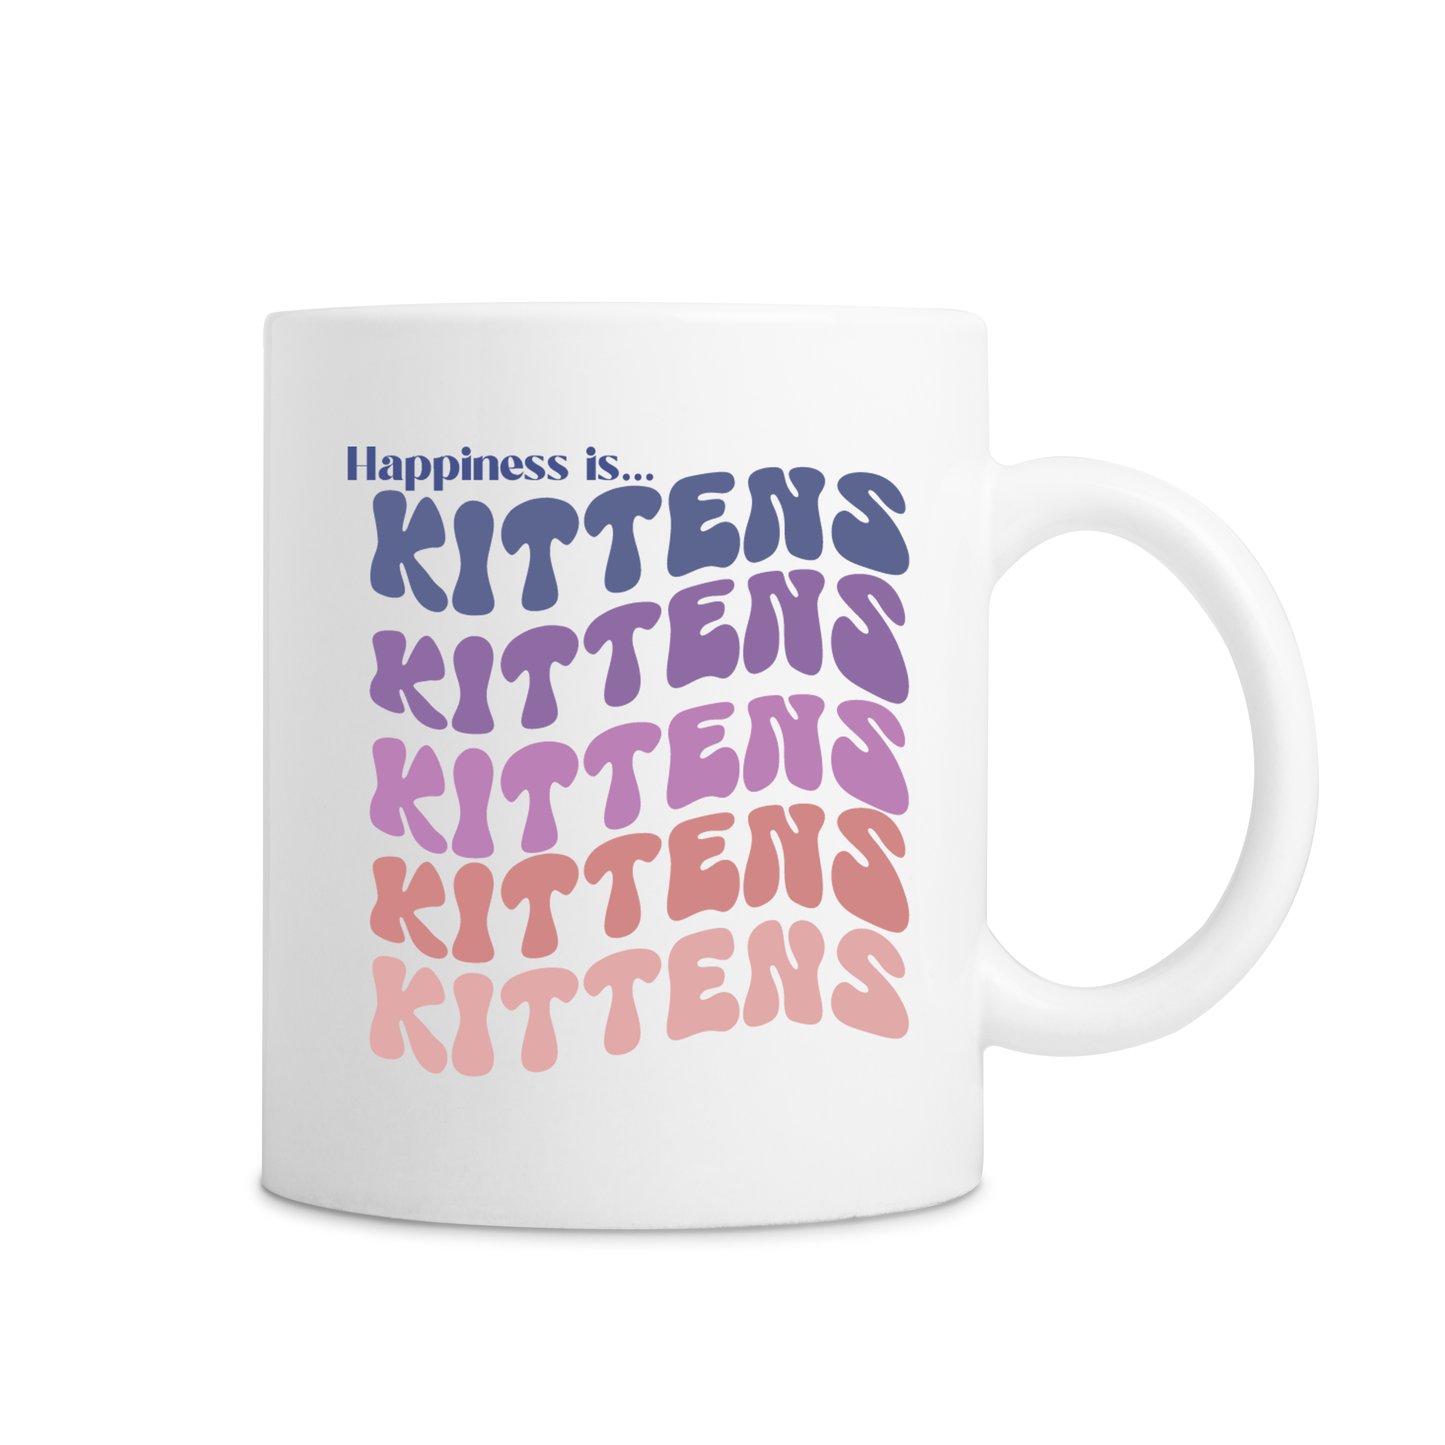 Happiness Is Kittens Mug - White